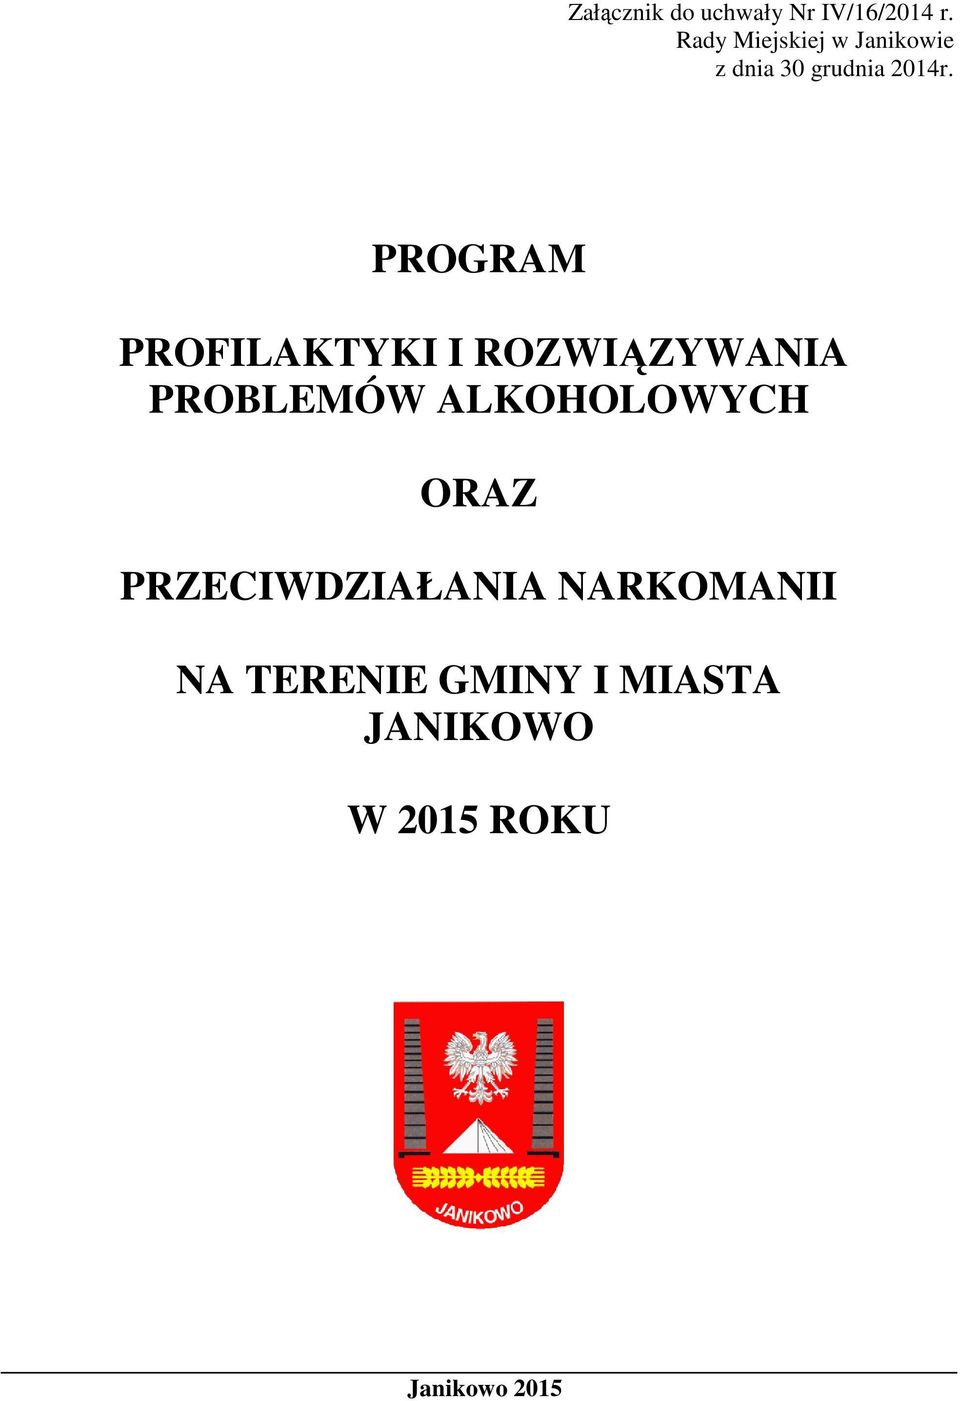 PROGRAM PROFILAKTYKI I ROZWIĄZYWANIA PROBLEMÓW ALKOHOLOWYCH